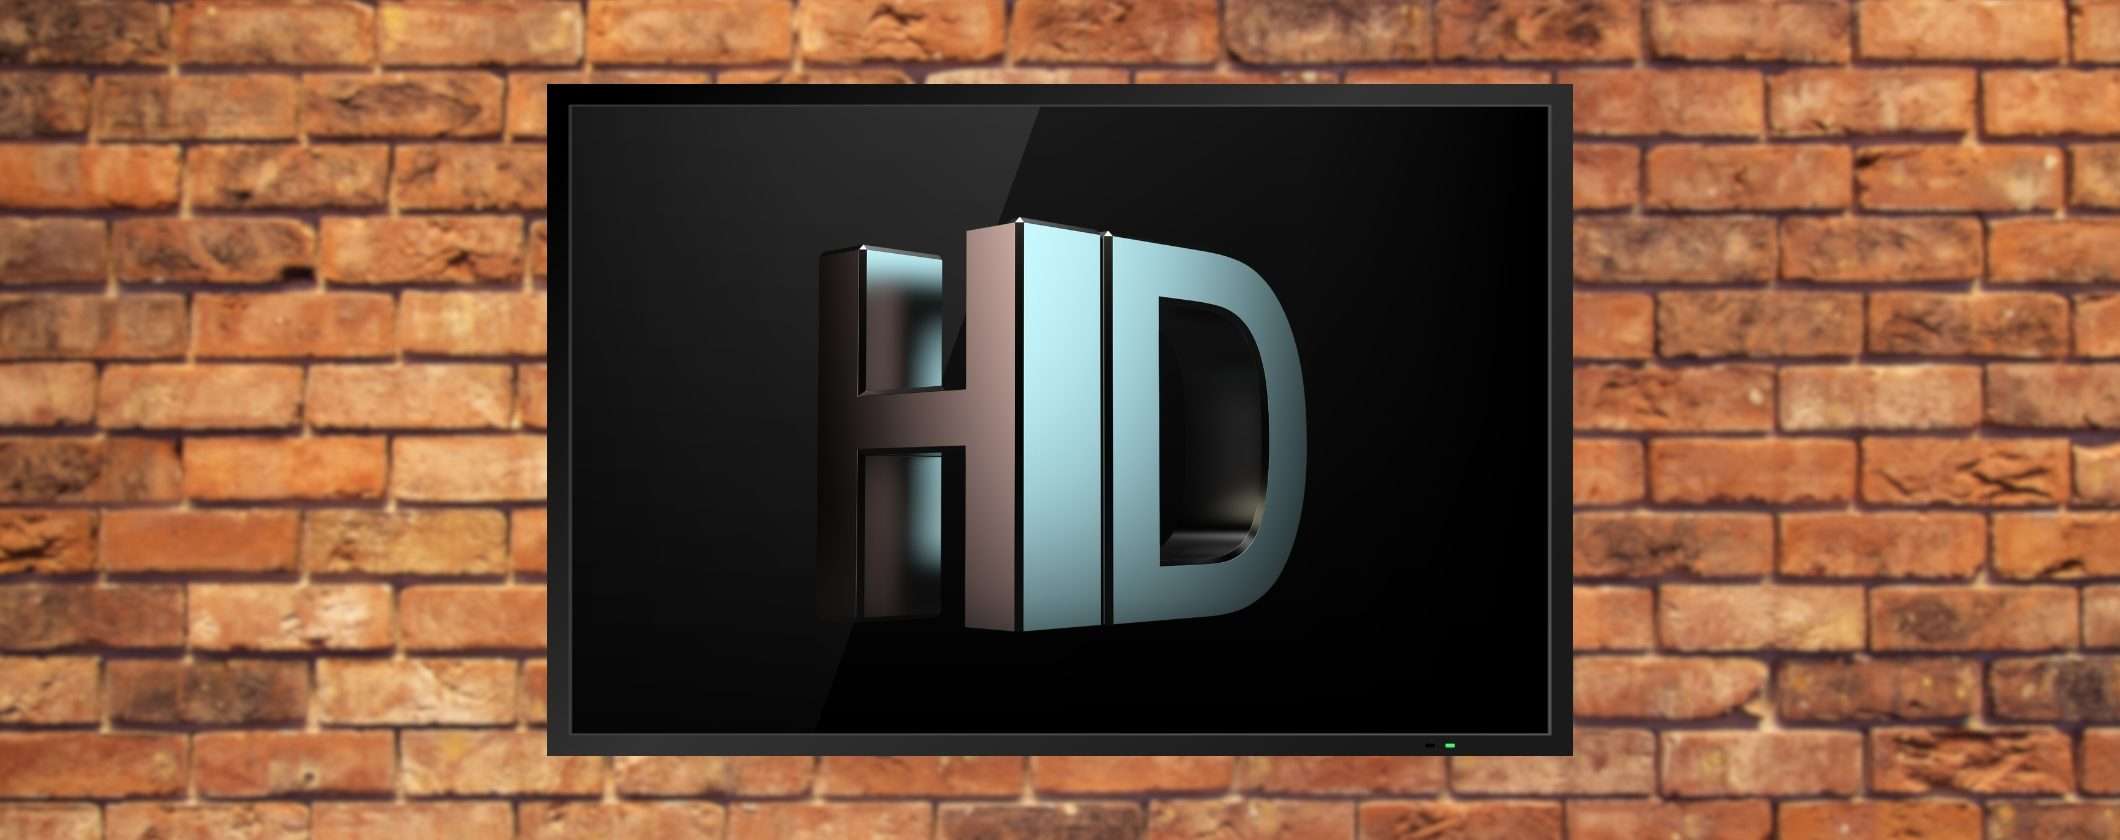 Digitale terrestre: altri canali ora trasmettono in HD